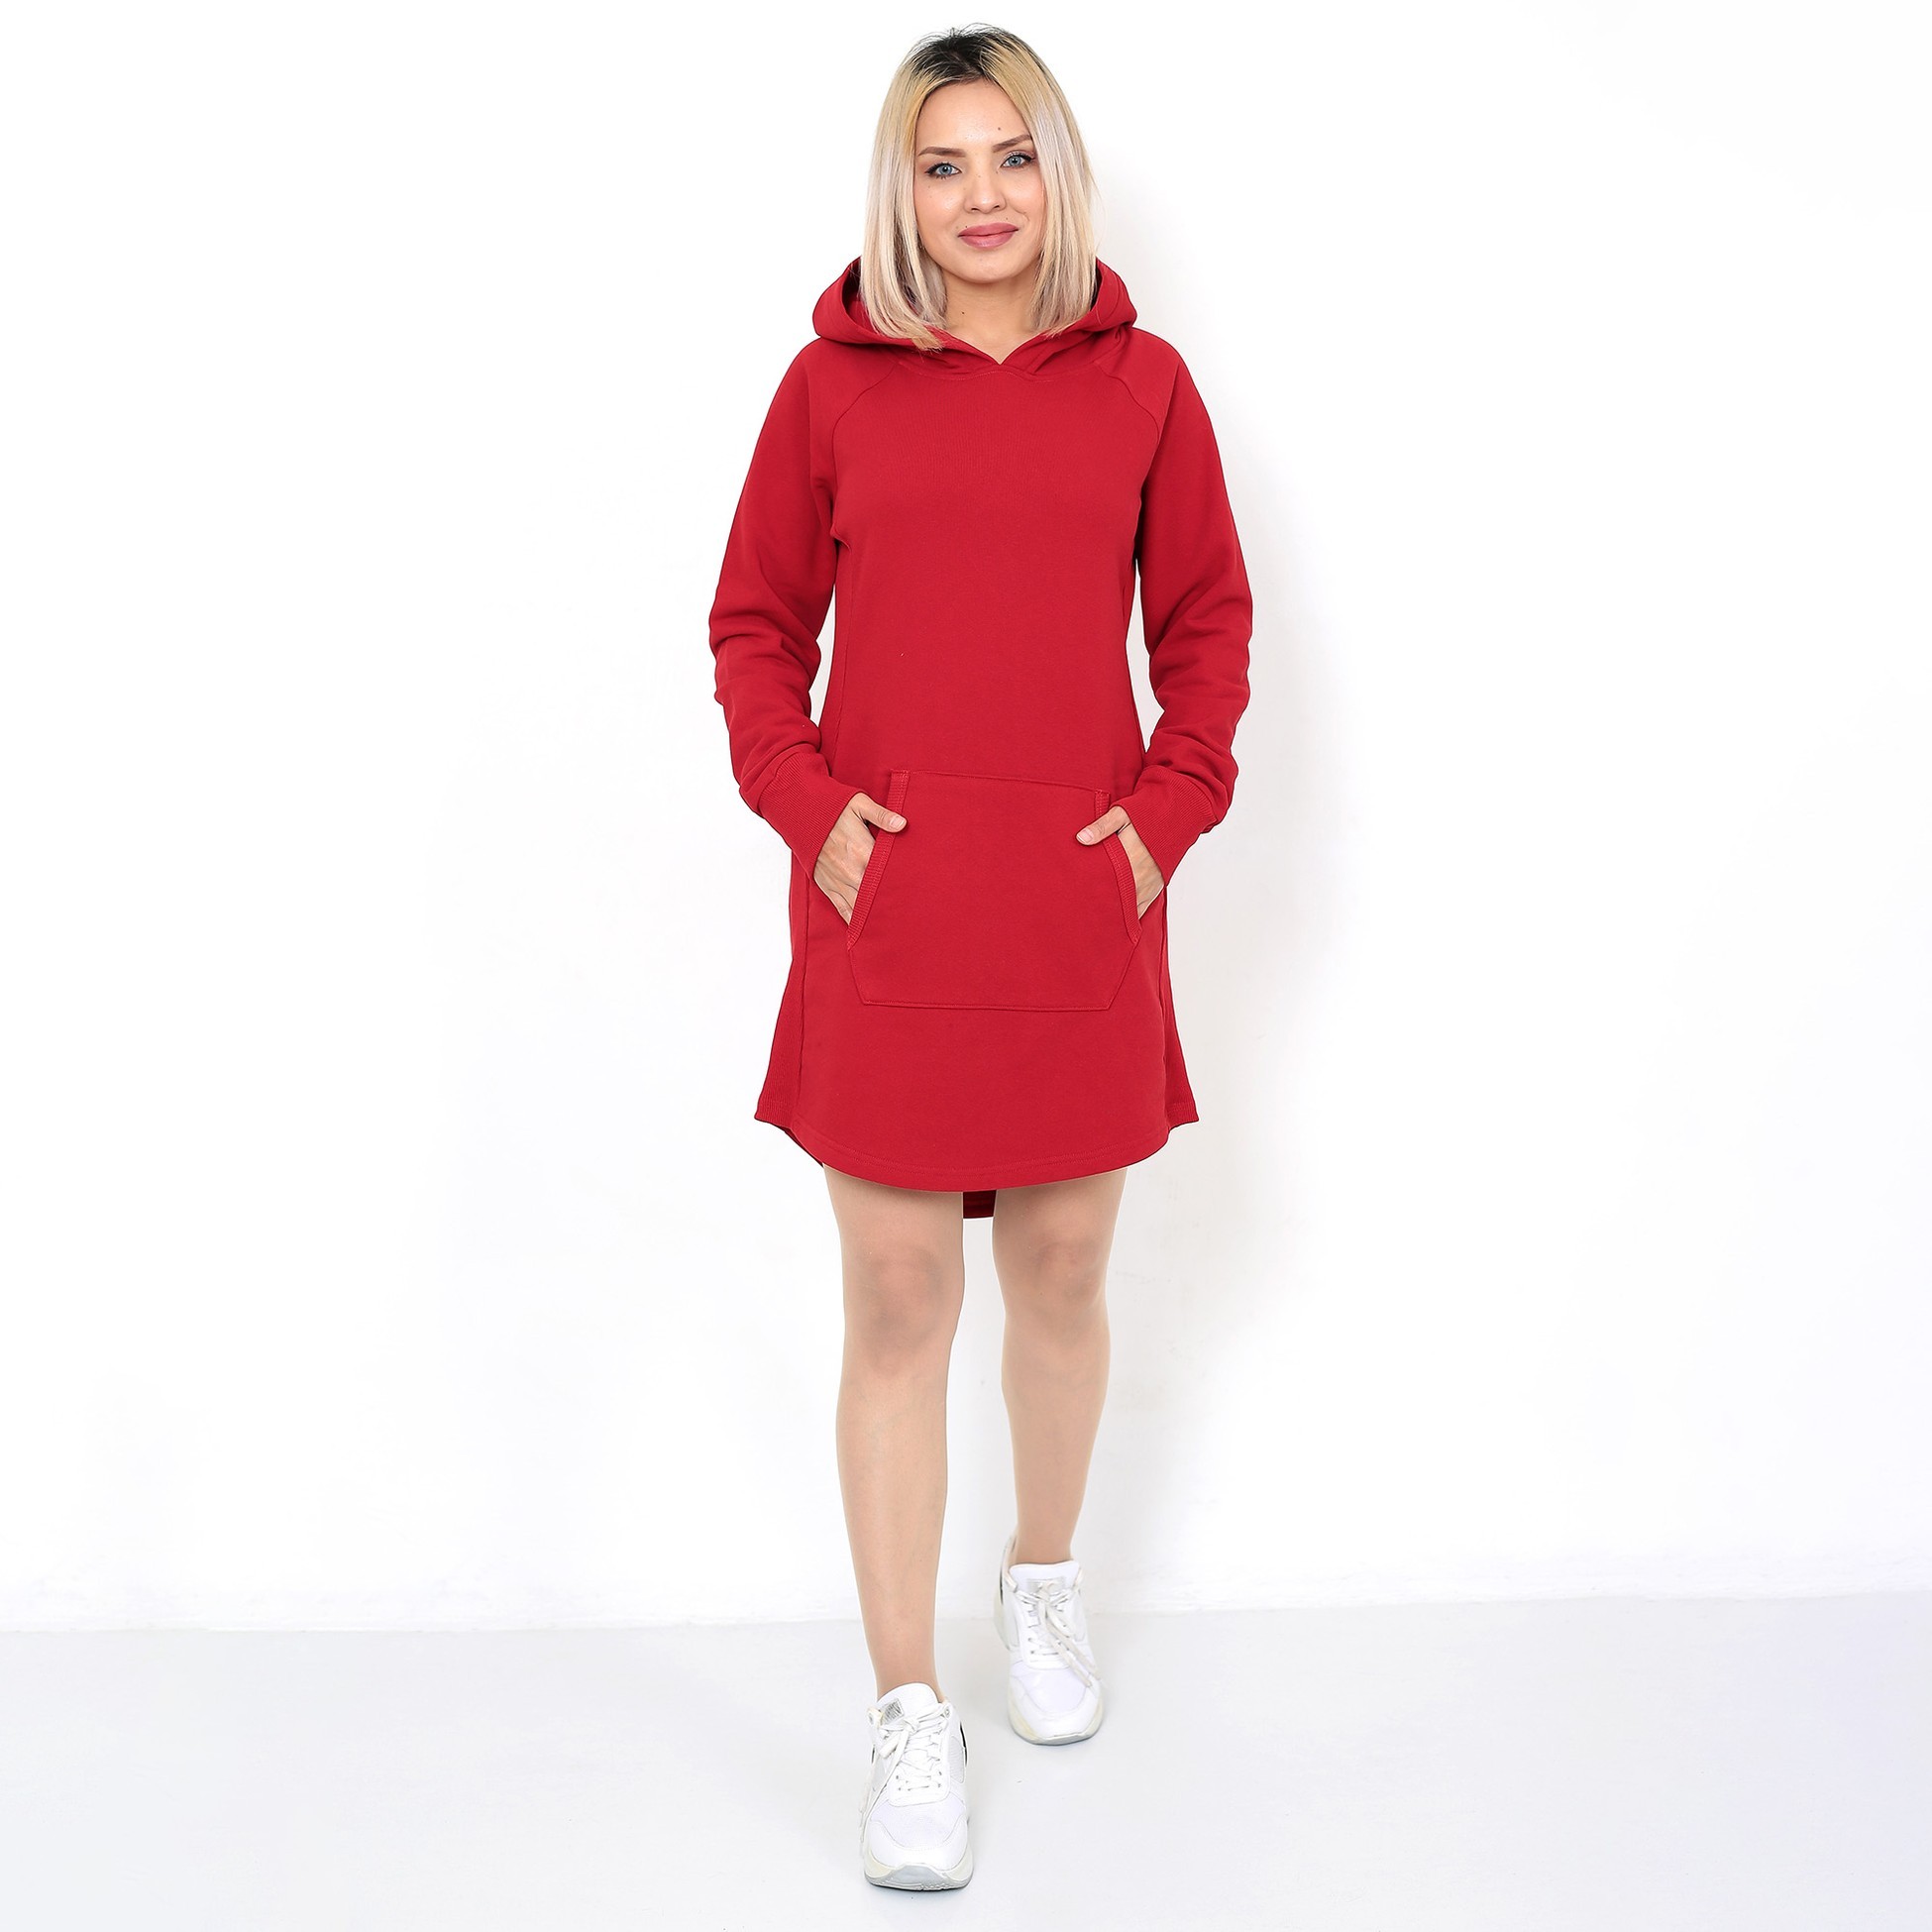 Kadın Uzun Kollu Fit Spor Elbise - Kırmızı